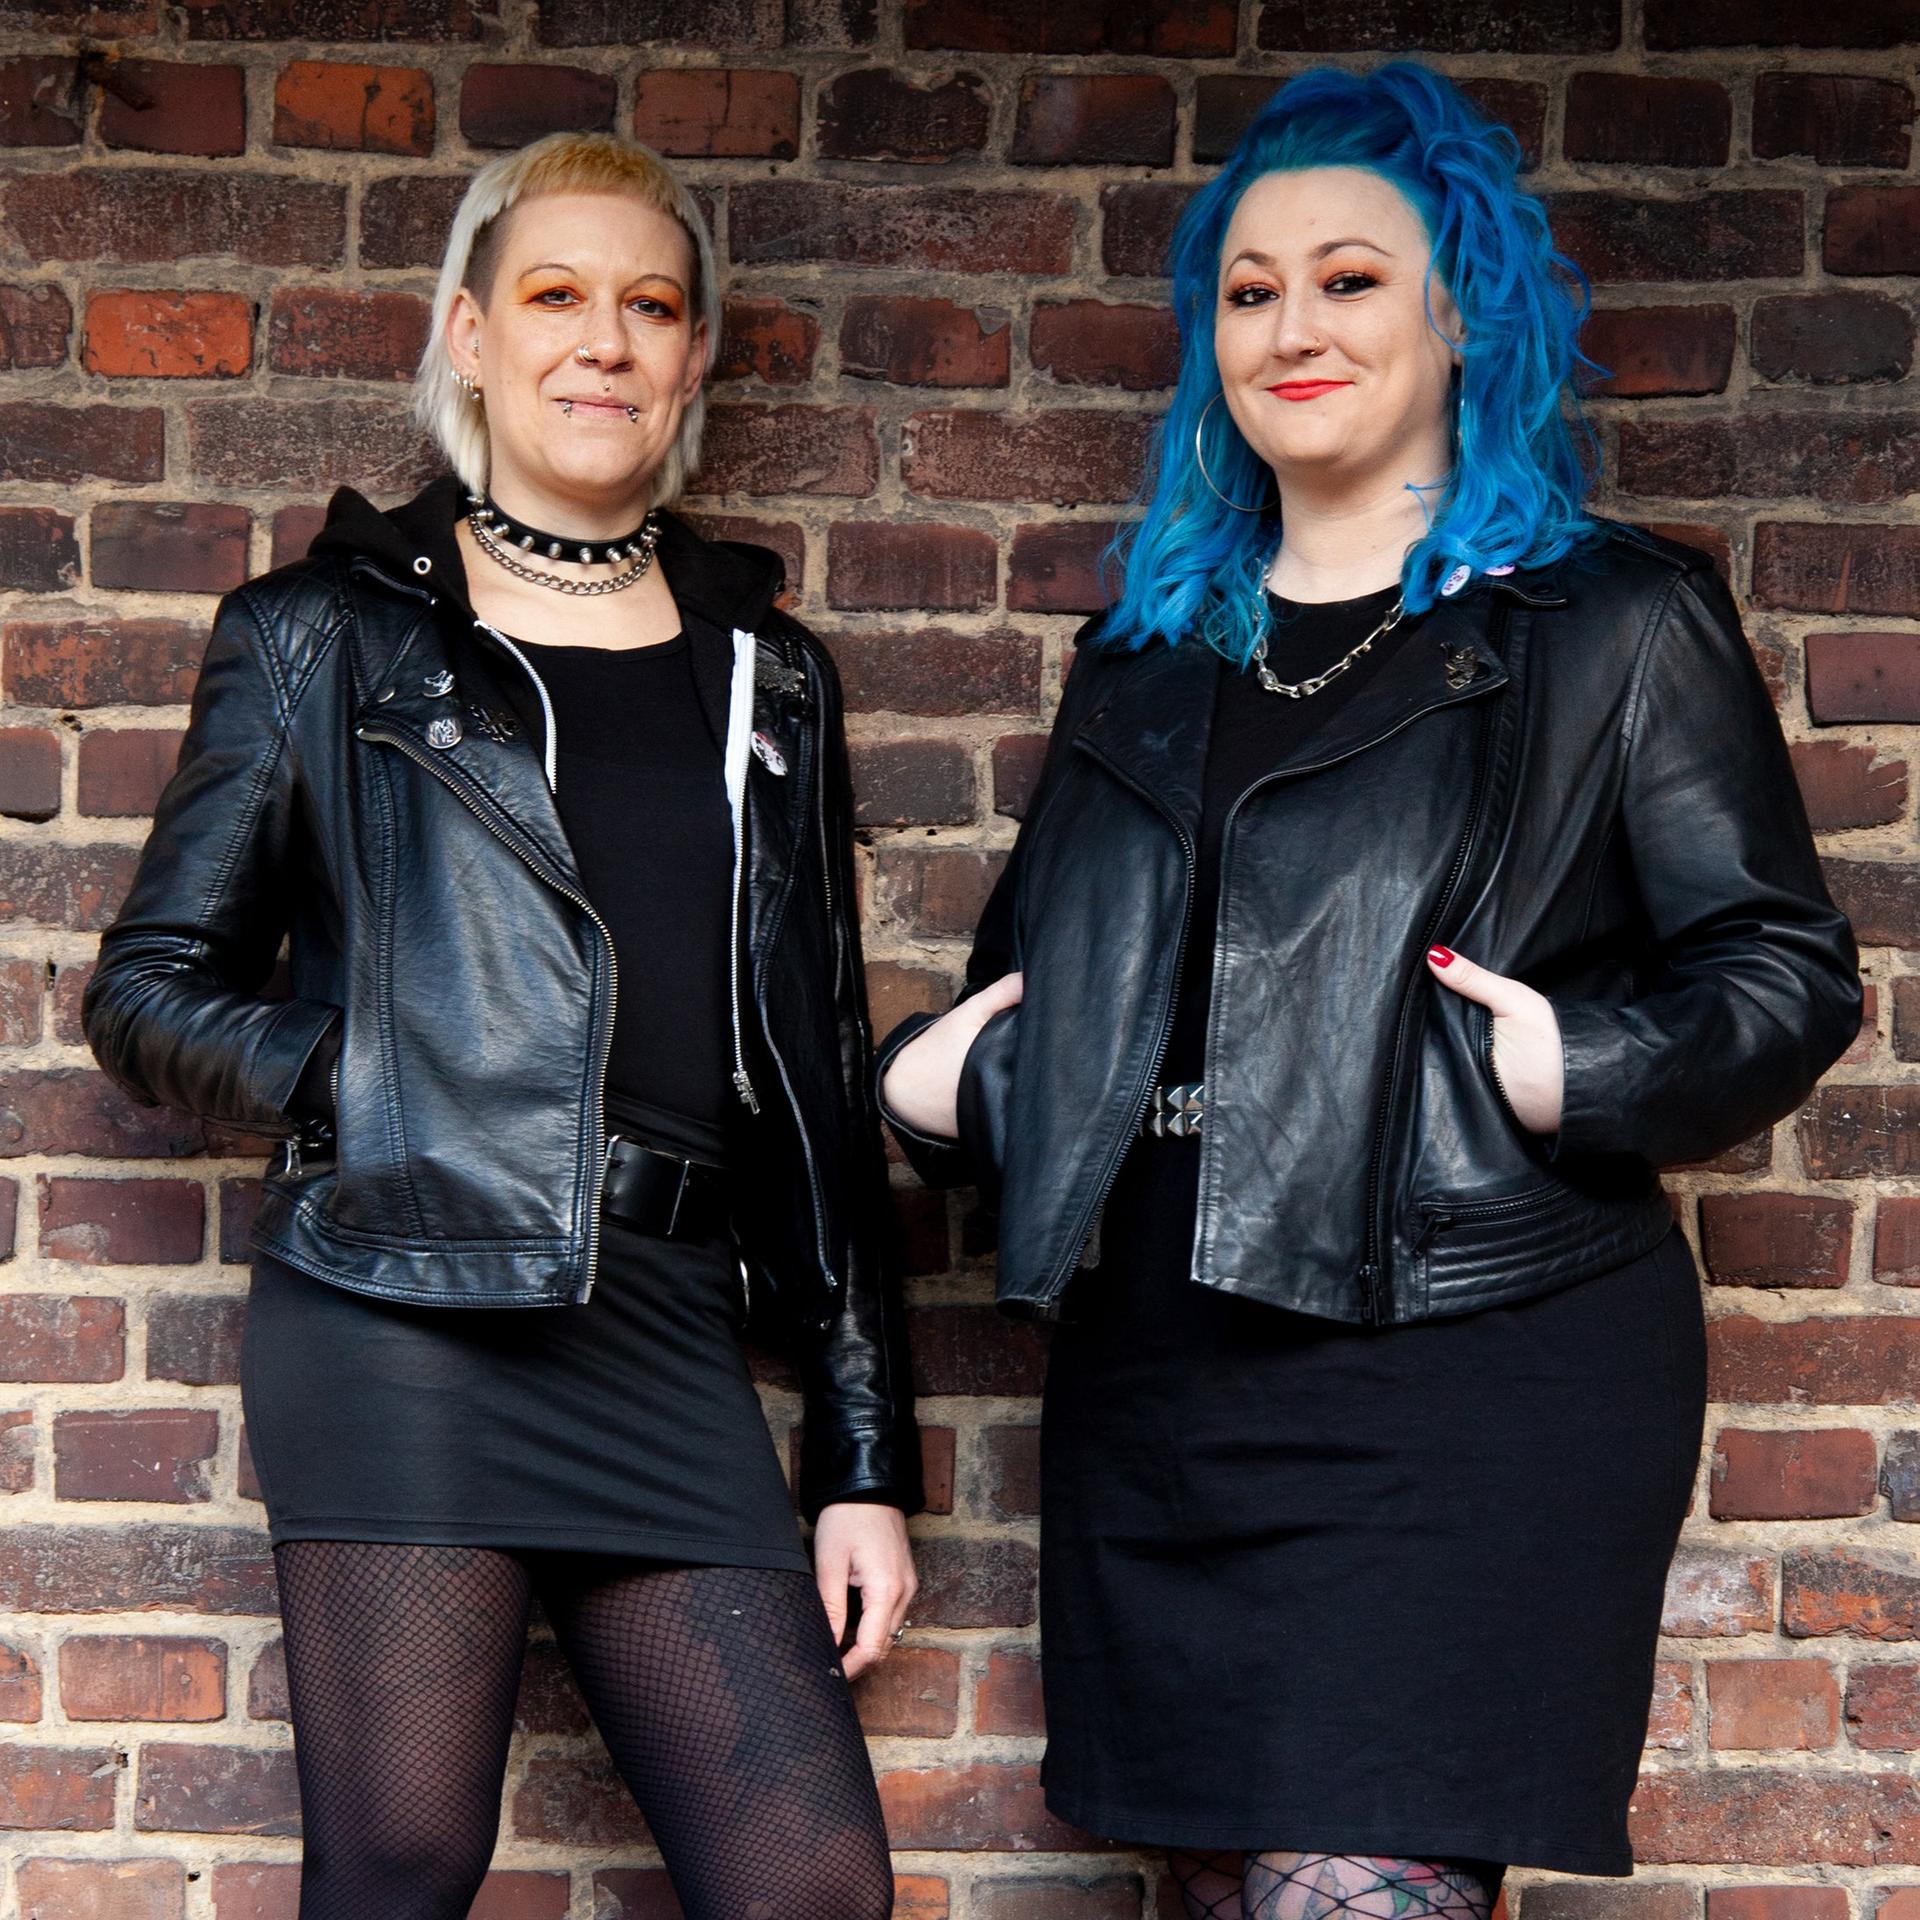 Diana Ringelsiep und Ronja Schwikowski stehen in punk-typischer Aufmachung vor einer Backsteinmauer und schauen in die Kamera.